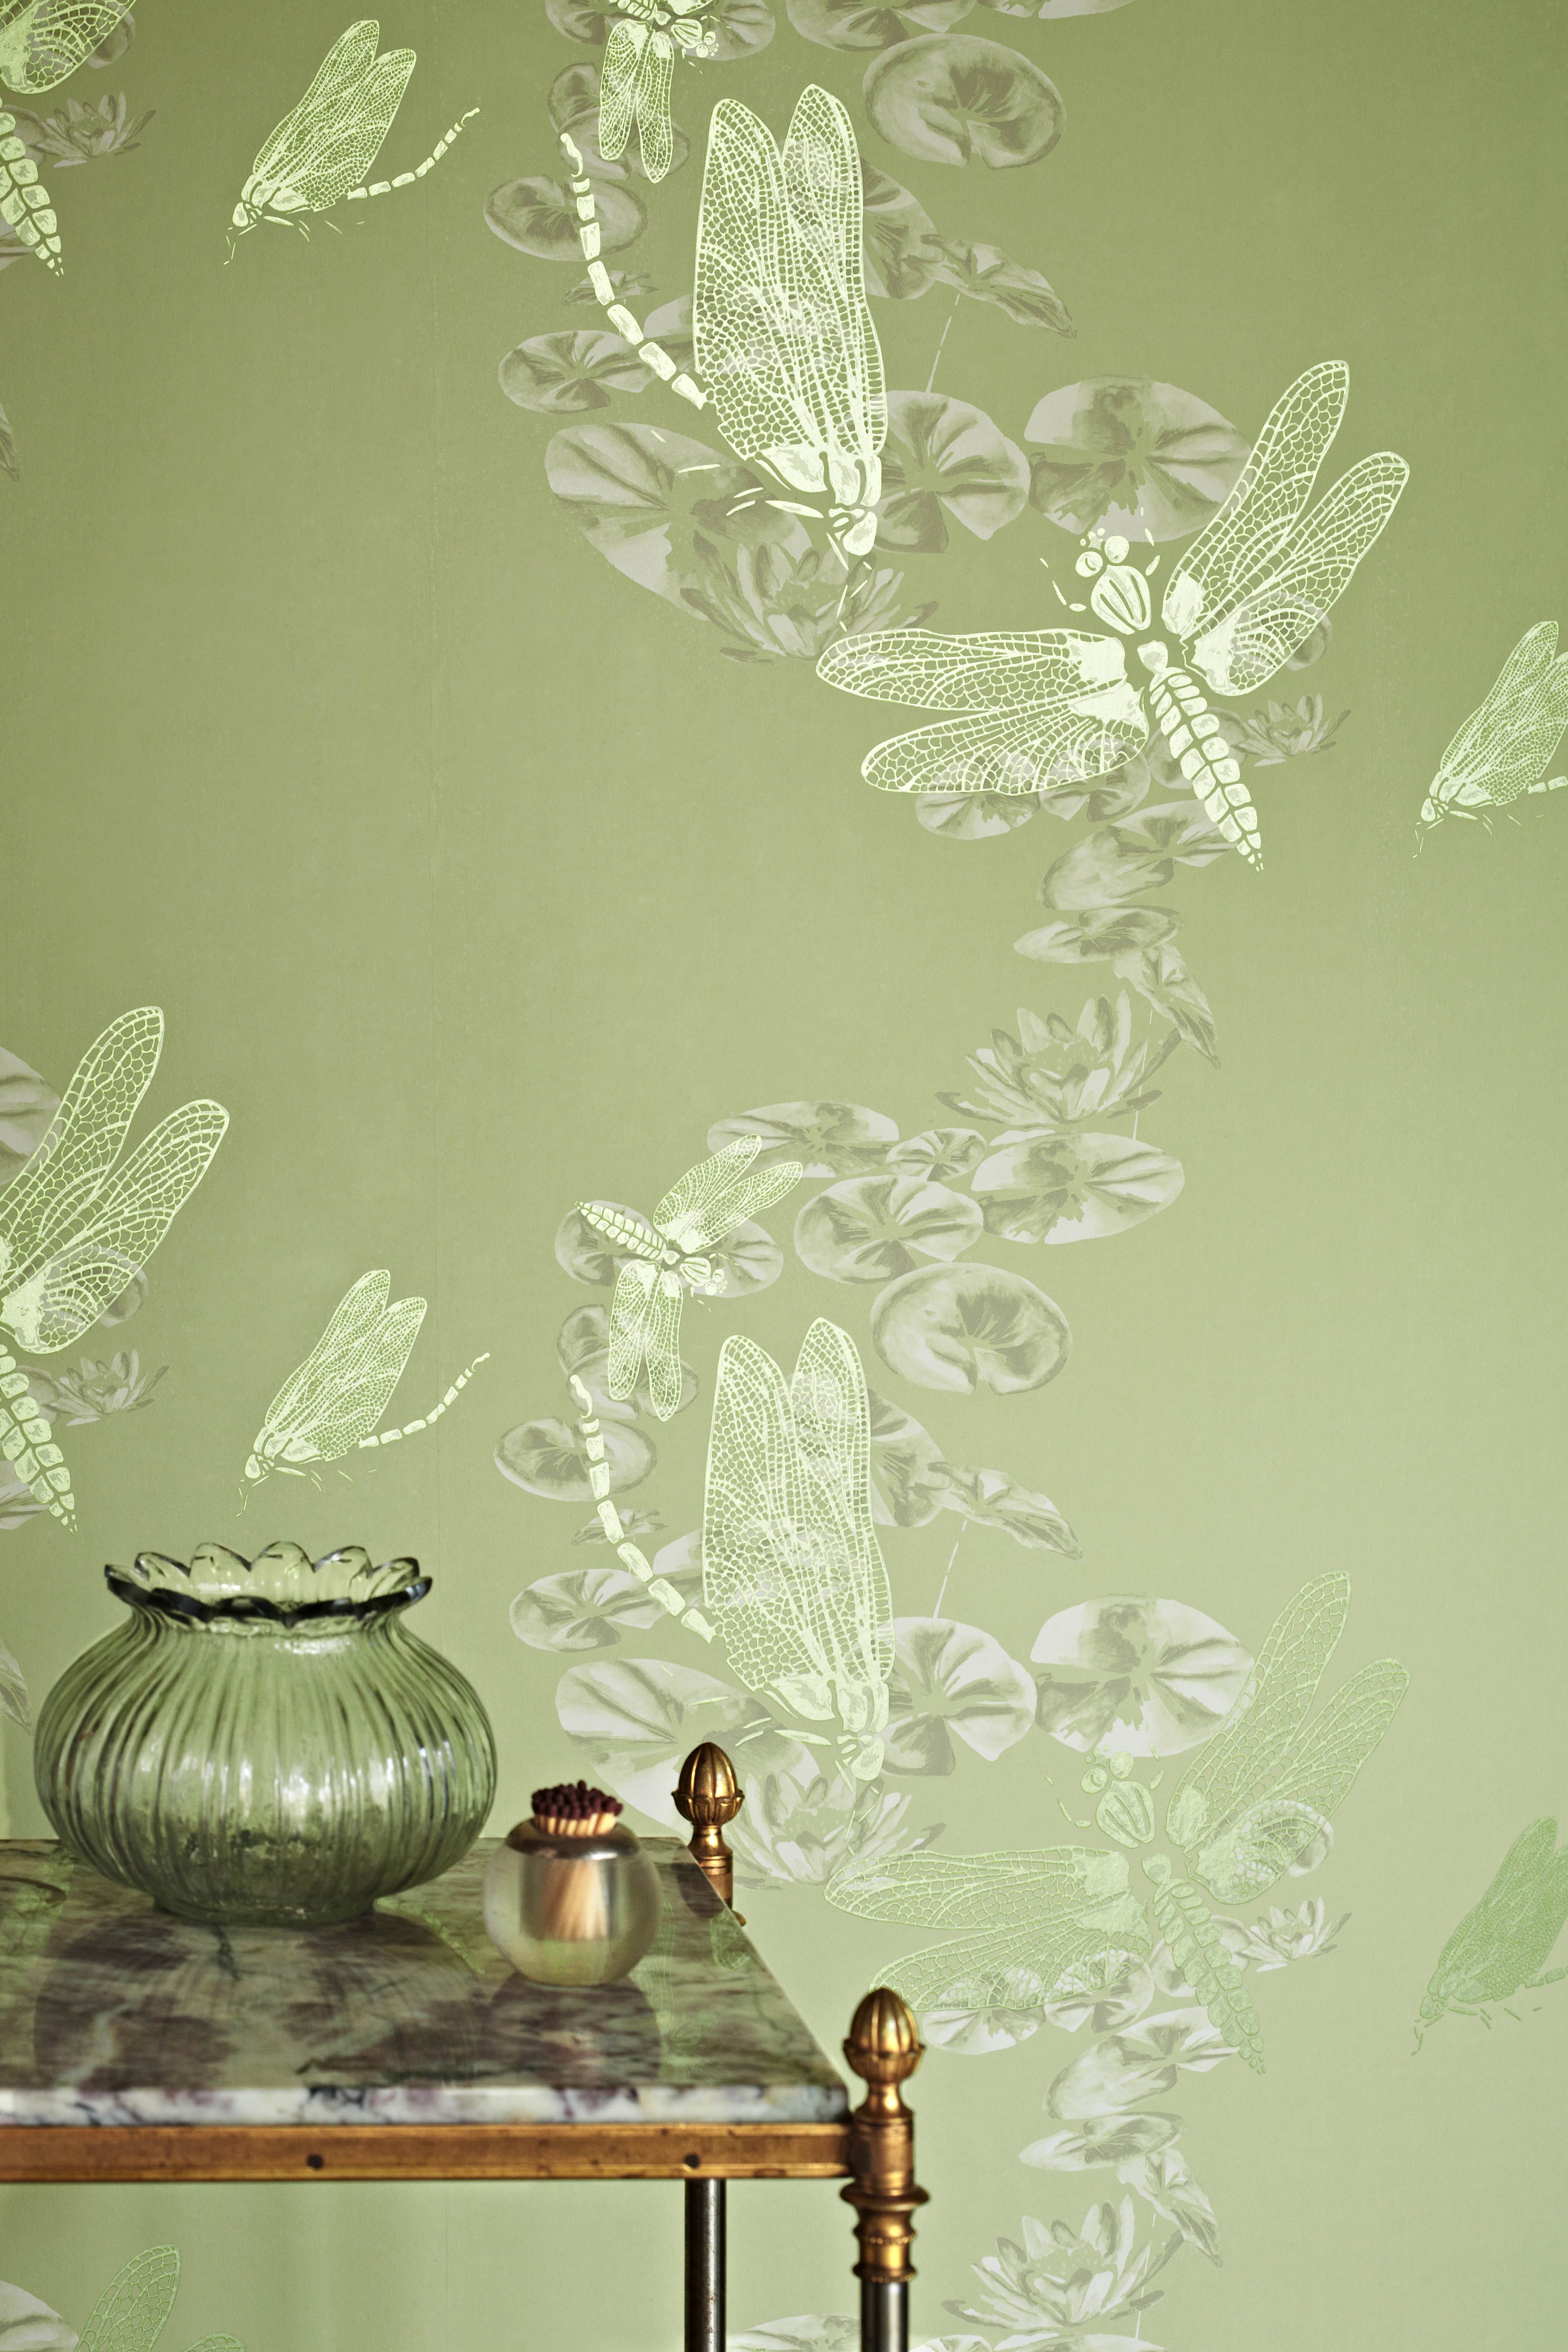 Nét đẹp sắc xanh vô cùng tươi mới và tràn đầy sức sống của hình nền màu xanh lá cây thiết kế 16+] Green Design Wallpapers - WallpaperSafari đang chờ đón bạn. Khám phá những hình ảnh tuyệt đẹp này để đưa không gian sống của bạn đến một tầm cao mới.